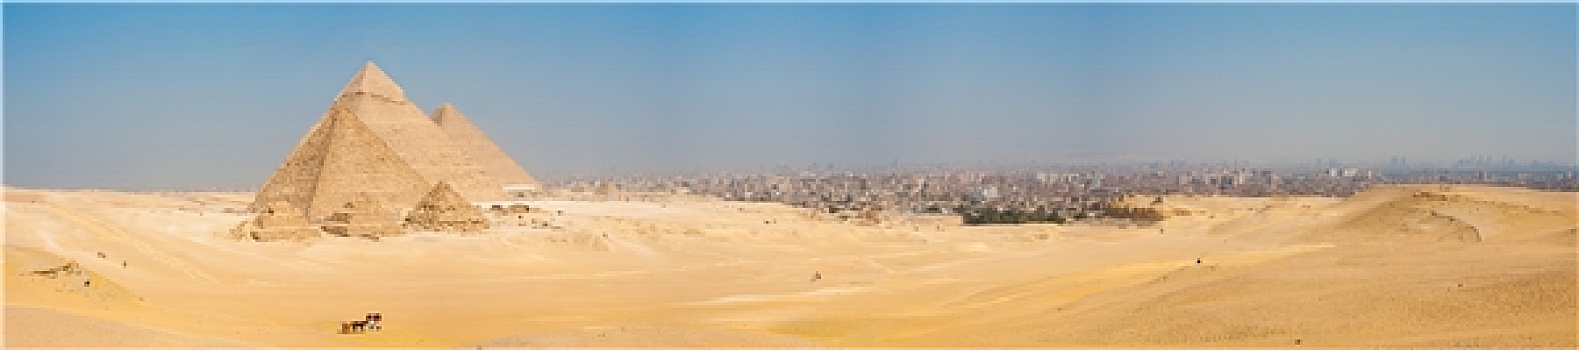 吉萨金字塔,全景,开罗,城市